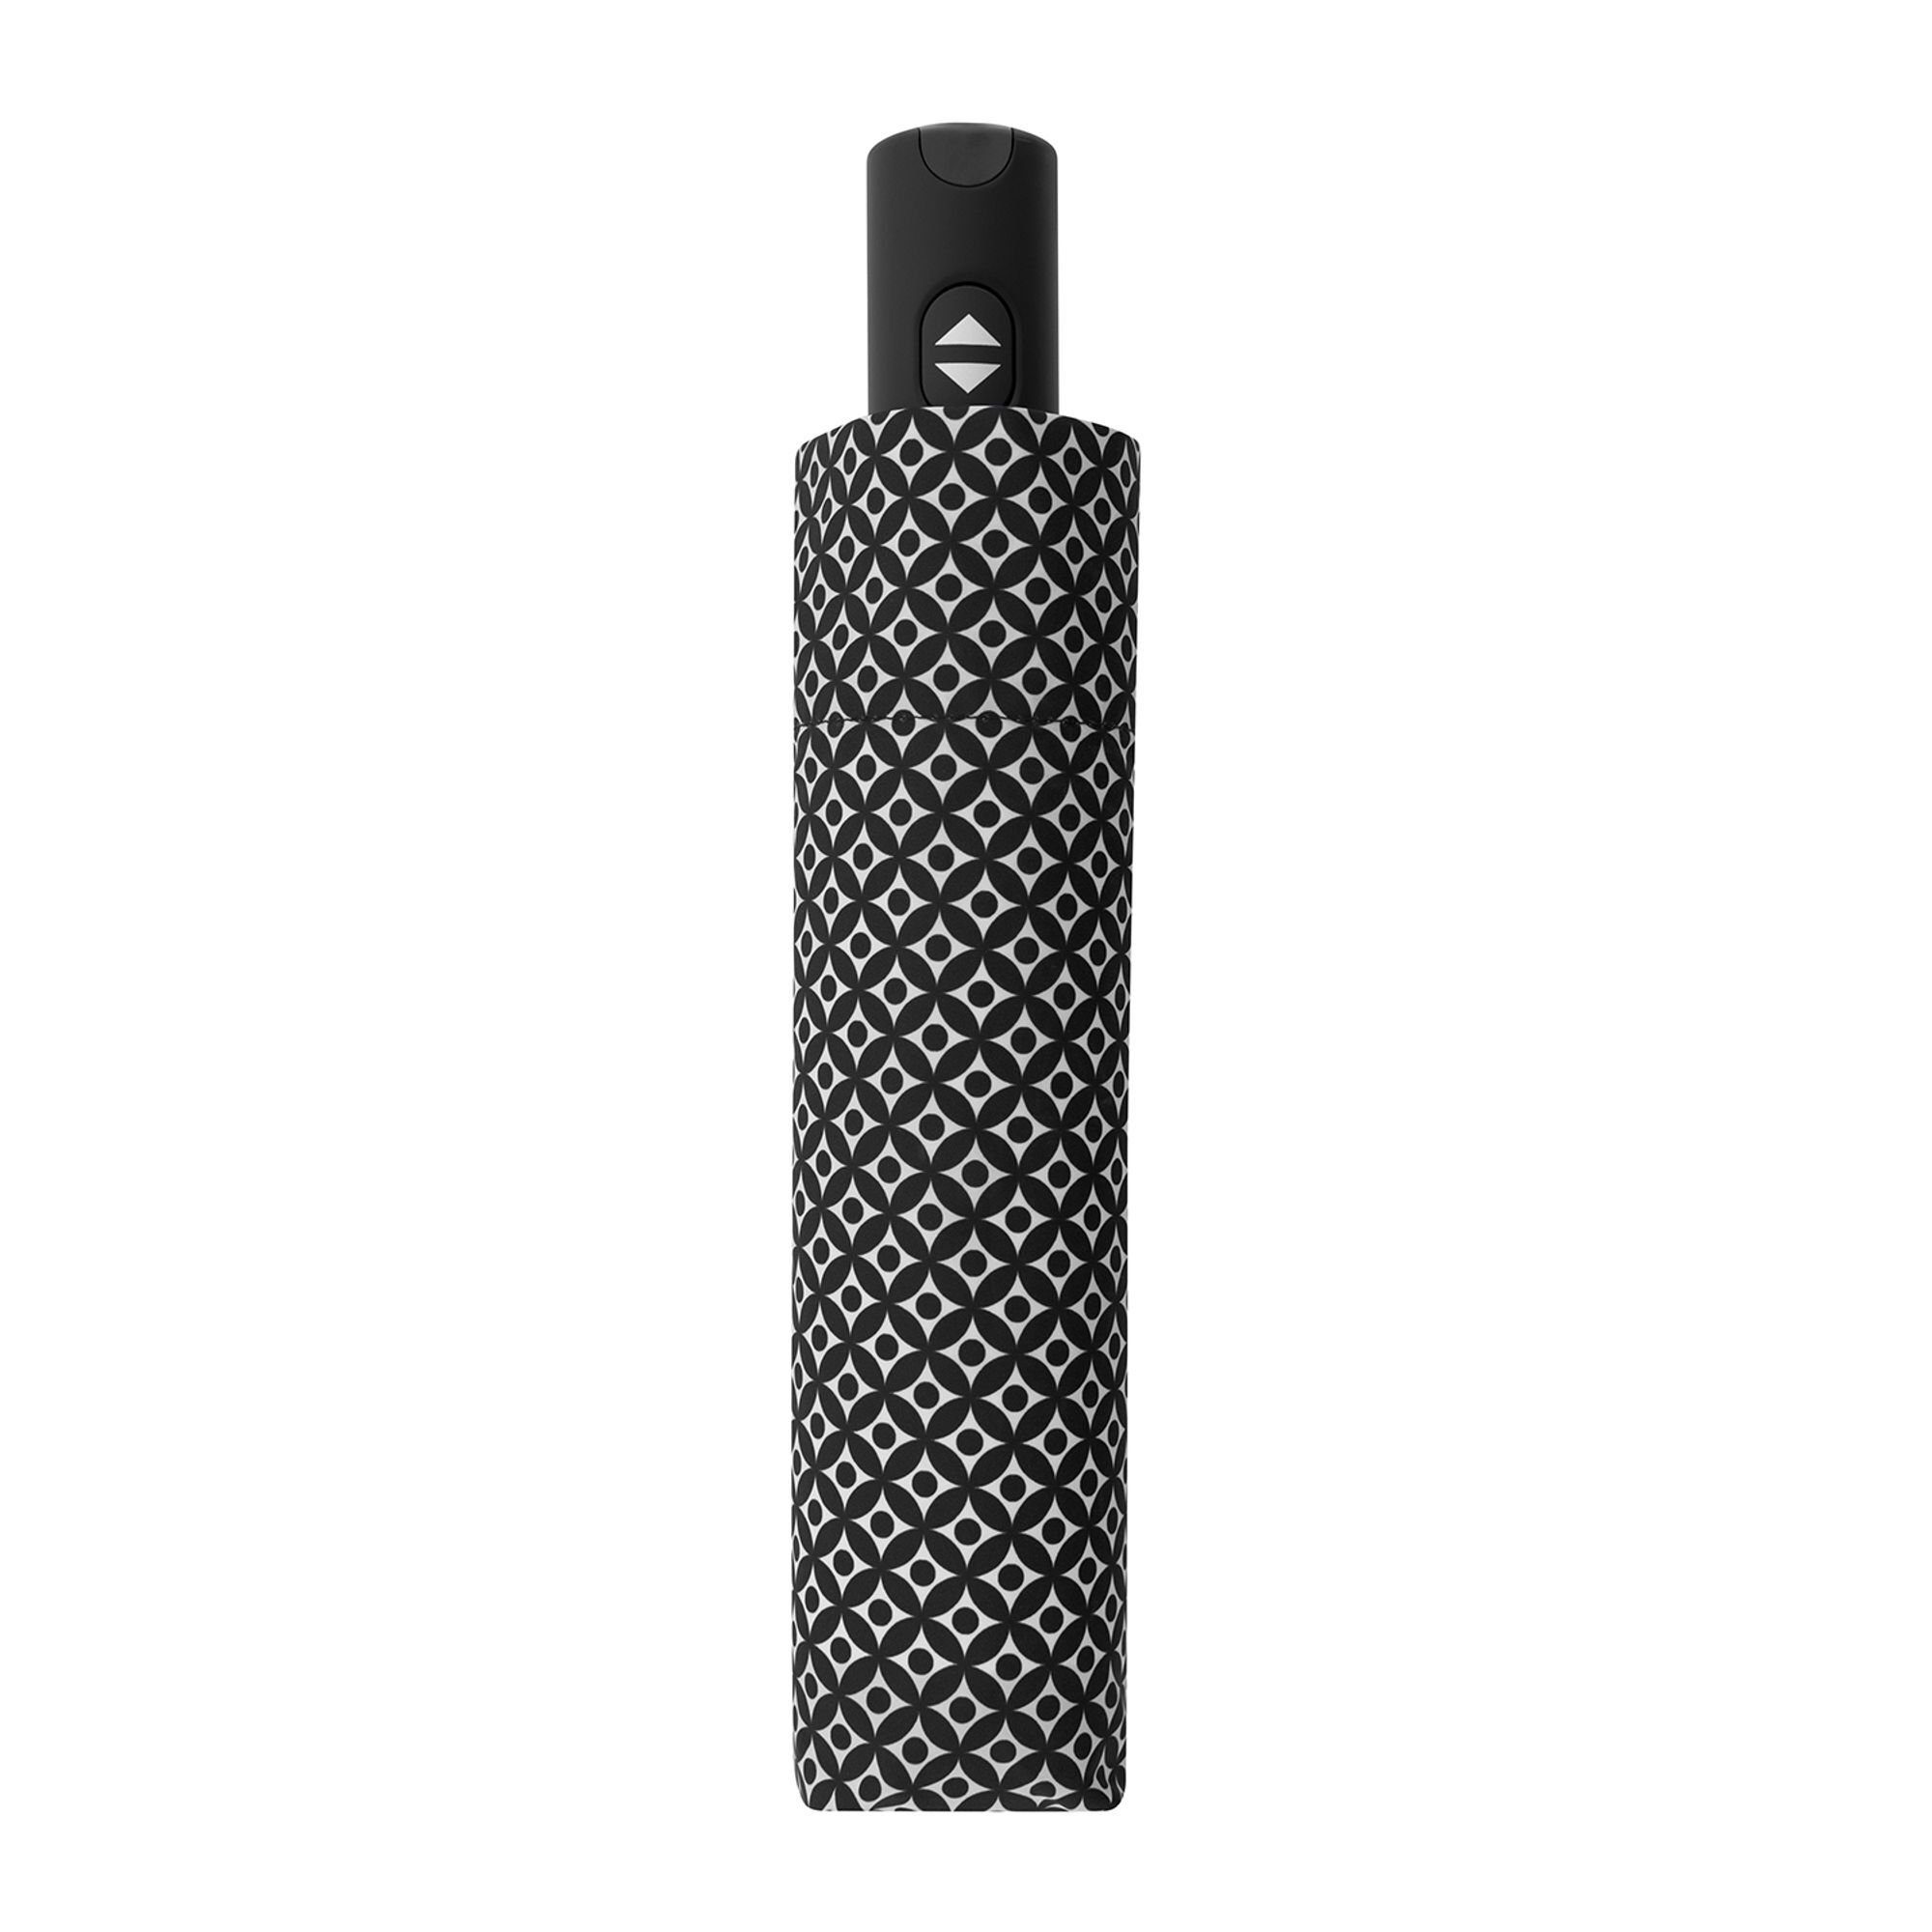 Carbonsteel Taschenregenschirm black doppler®